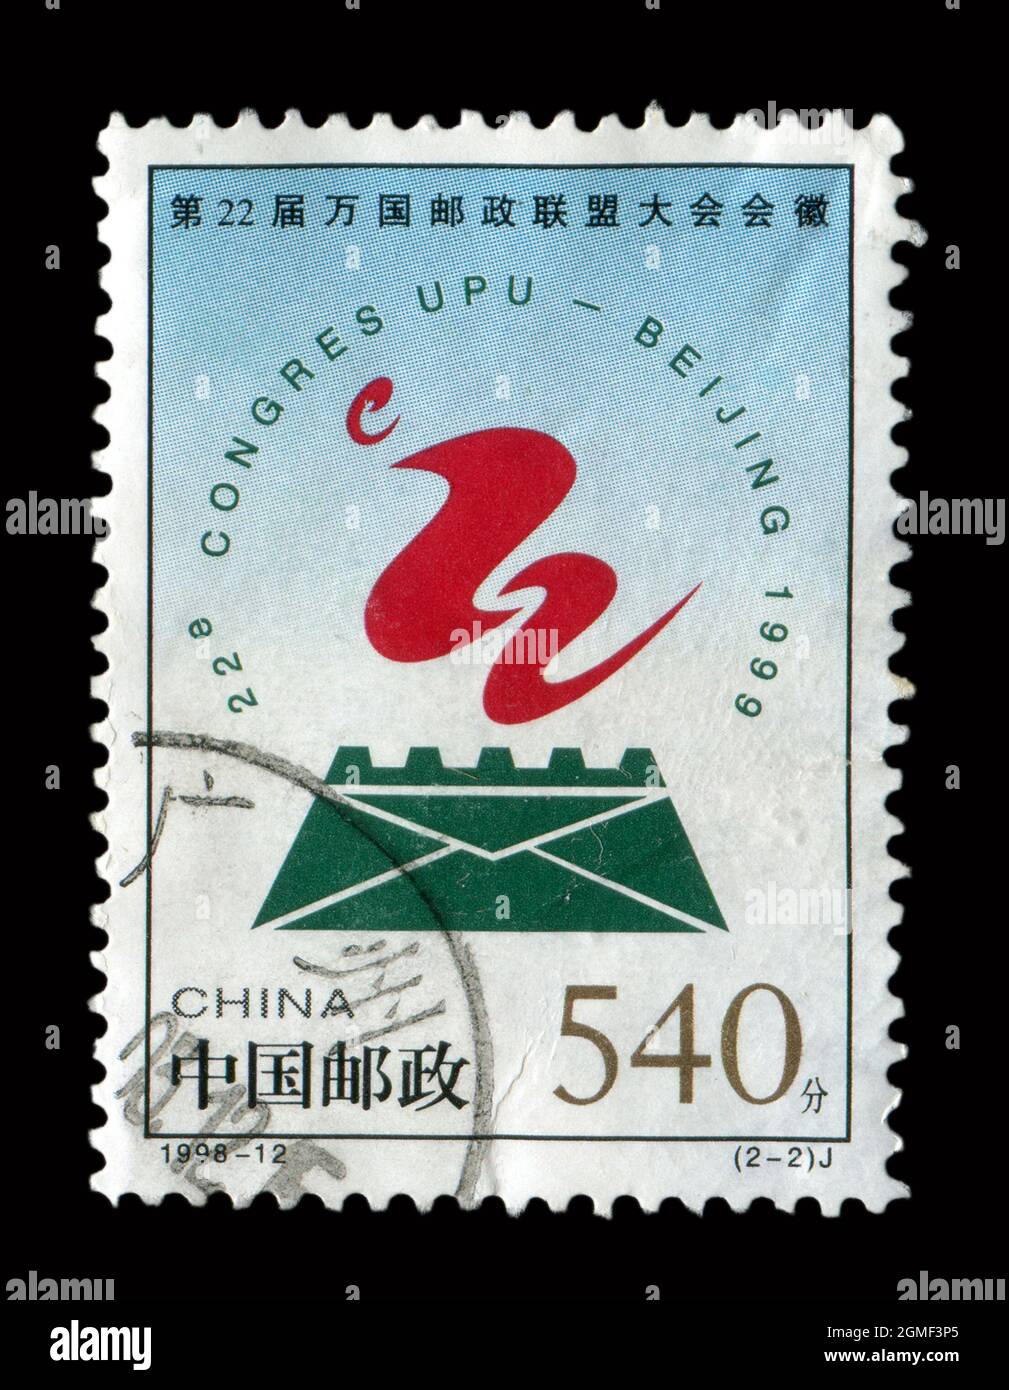 Francobollo stampato in Cina mostra l'immagine del 1998-12 emblema del 22° Congresso dell'Unione postale universale, circa 1998. Foto Stock